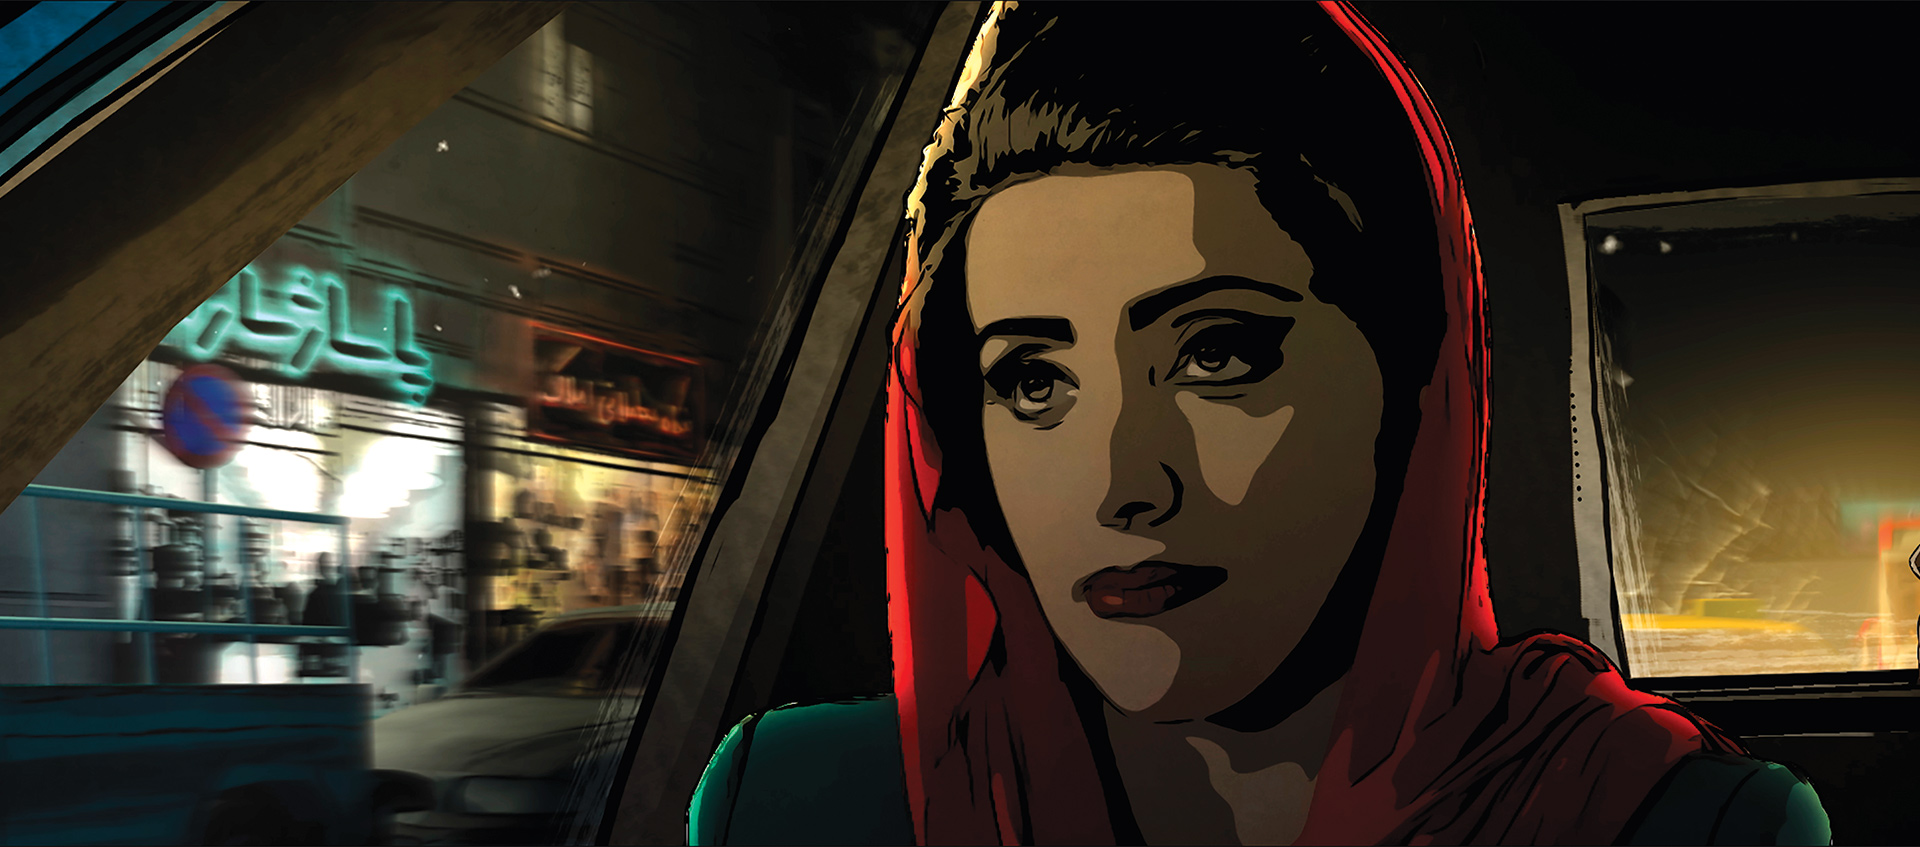 Iranian girl in taxi